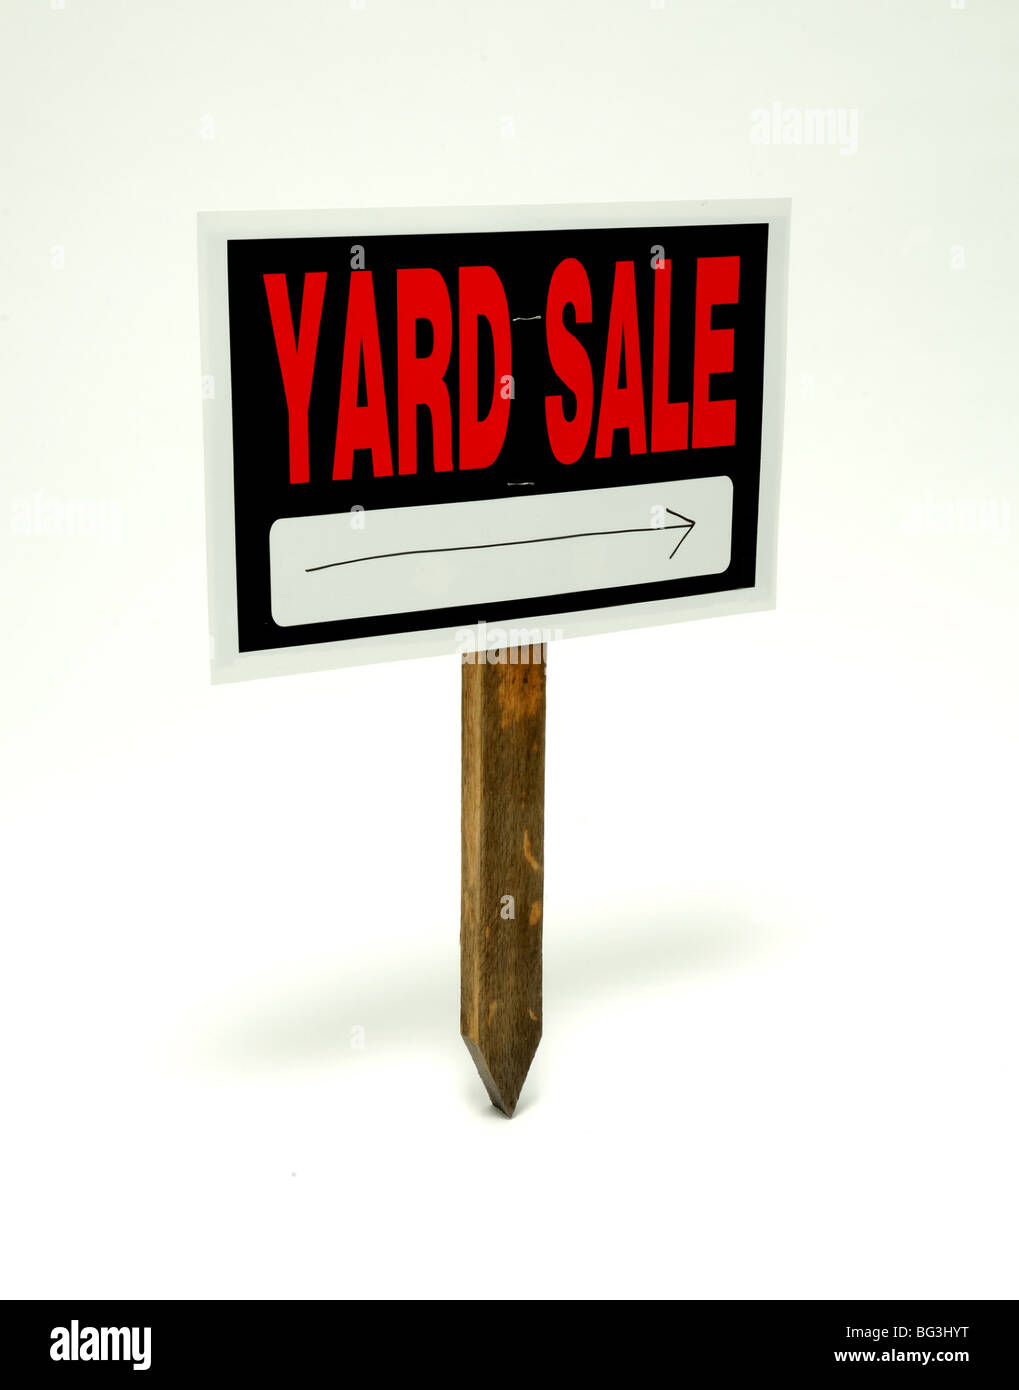 Yard Sale signe avec une flèche sur un poste en bois Banque D'Images